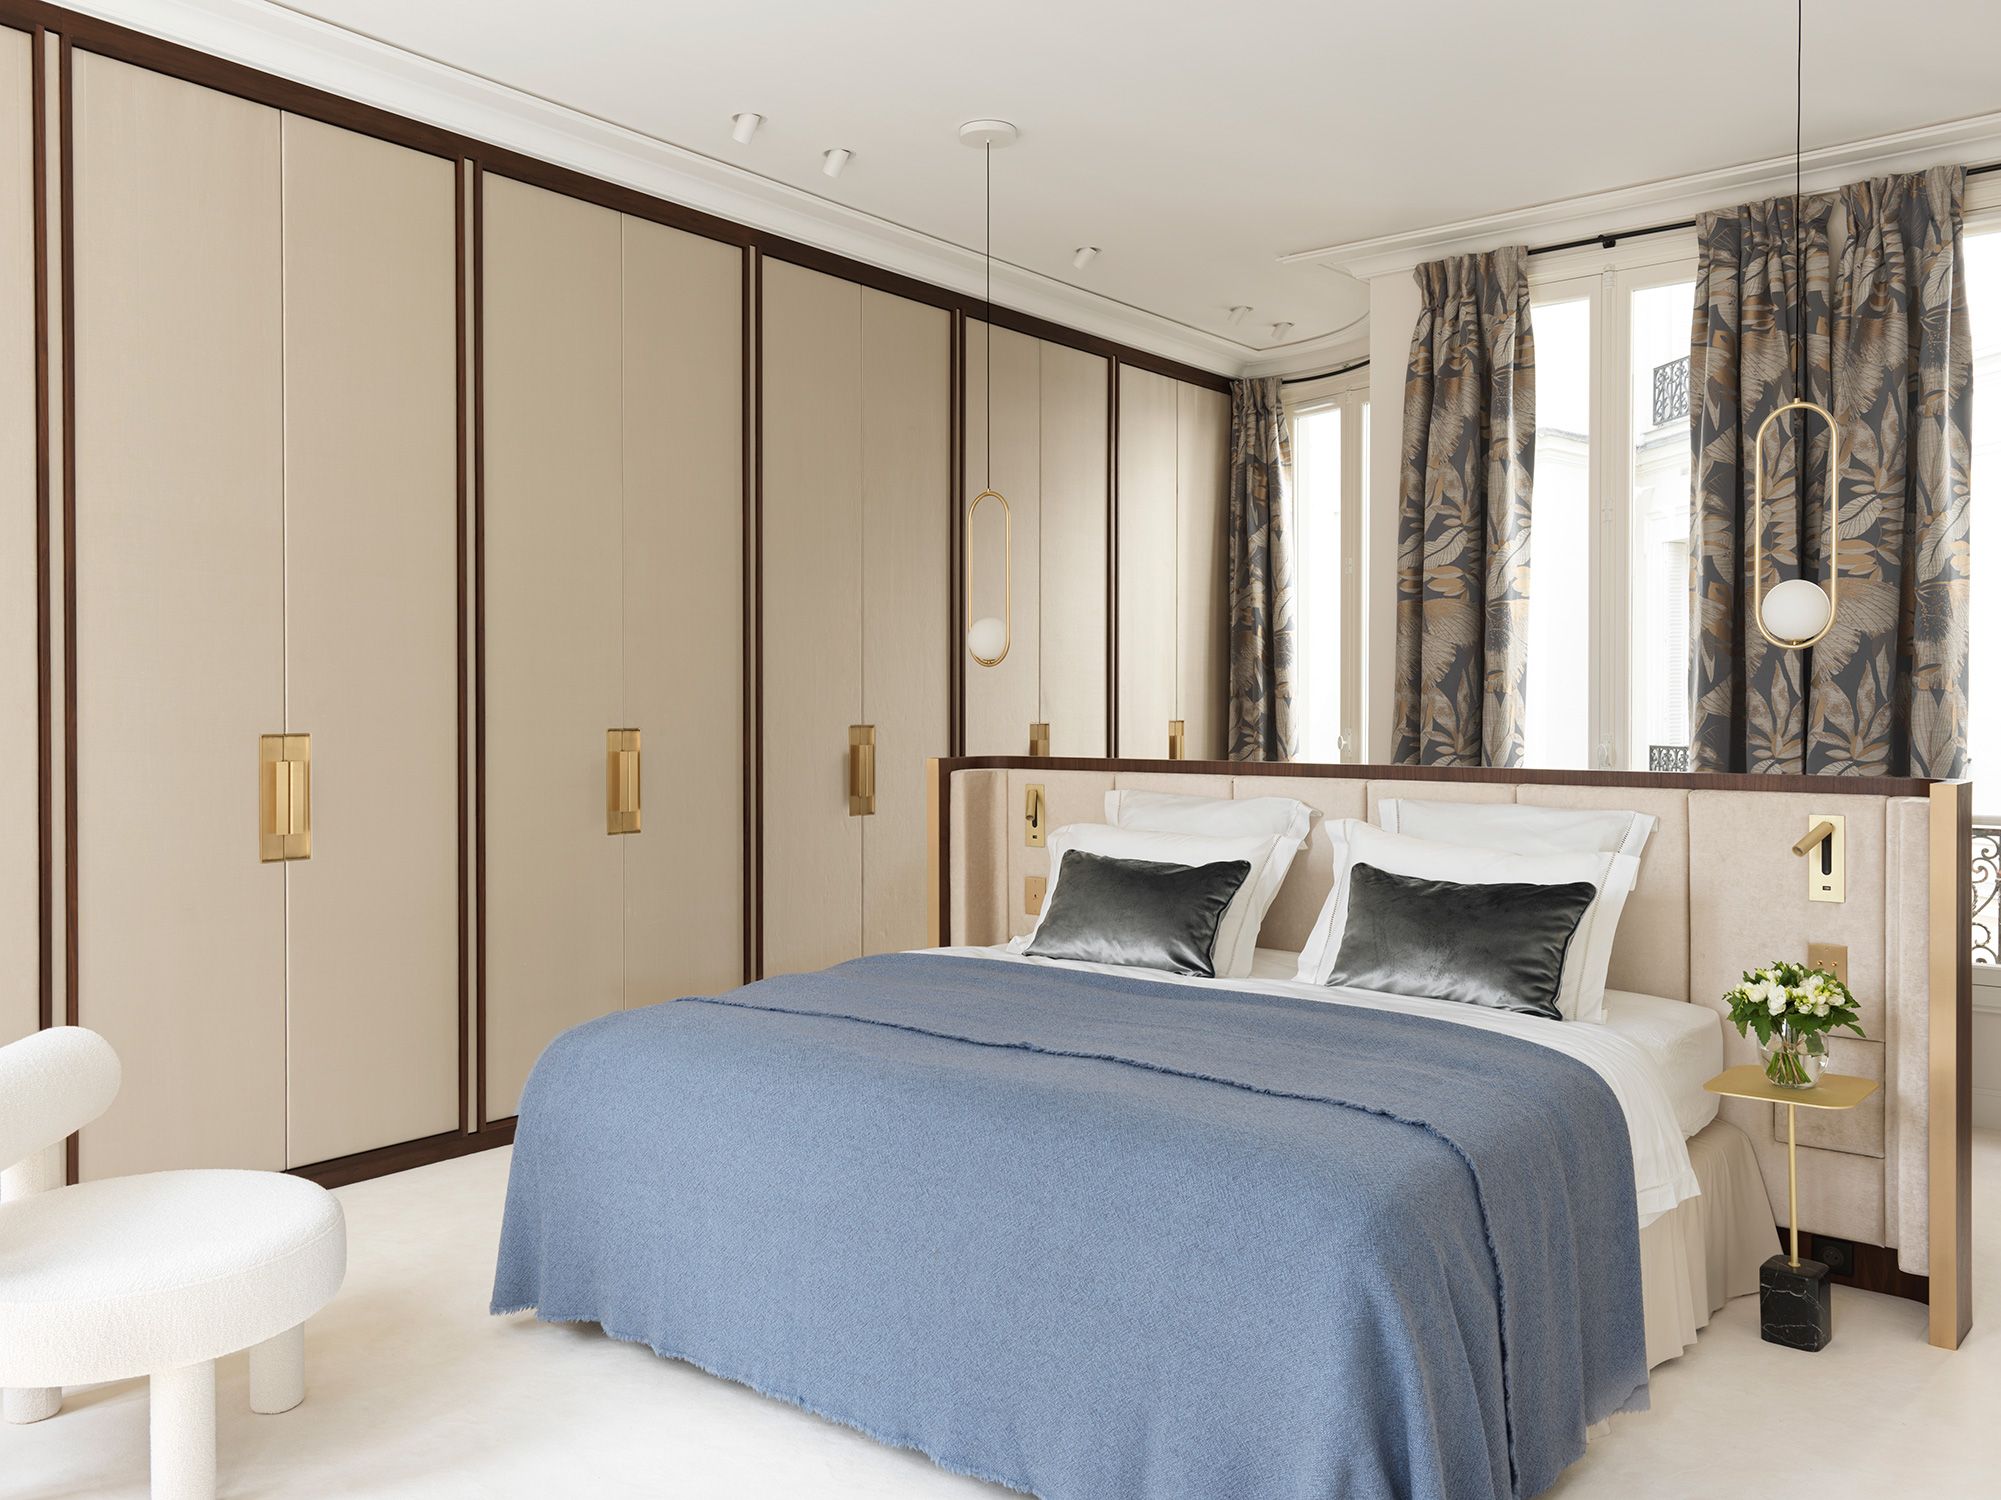 Fotografía interior de una cama de lujo moderna con textura de